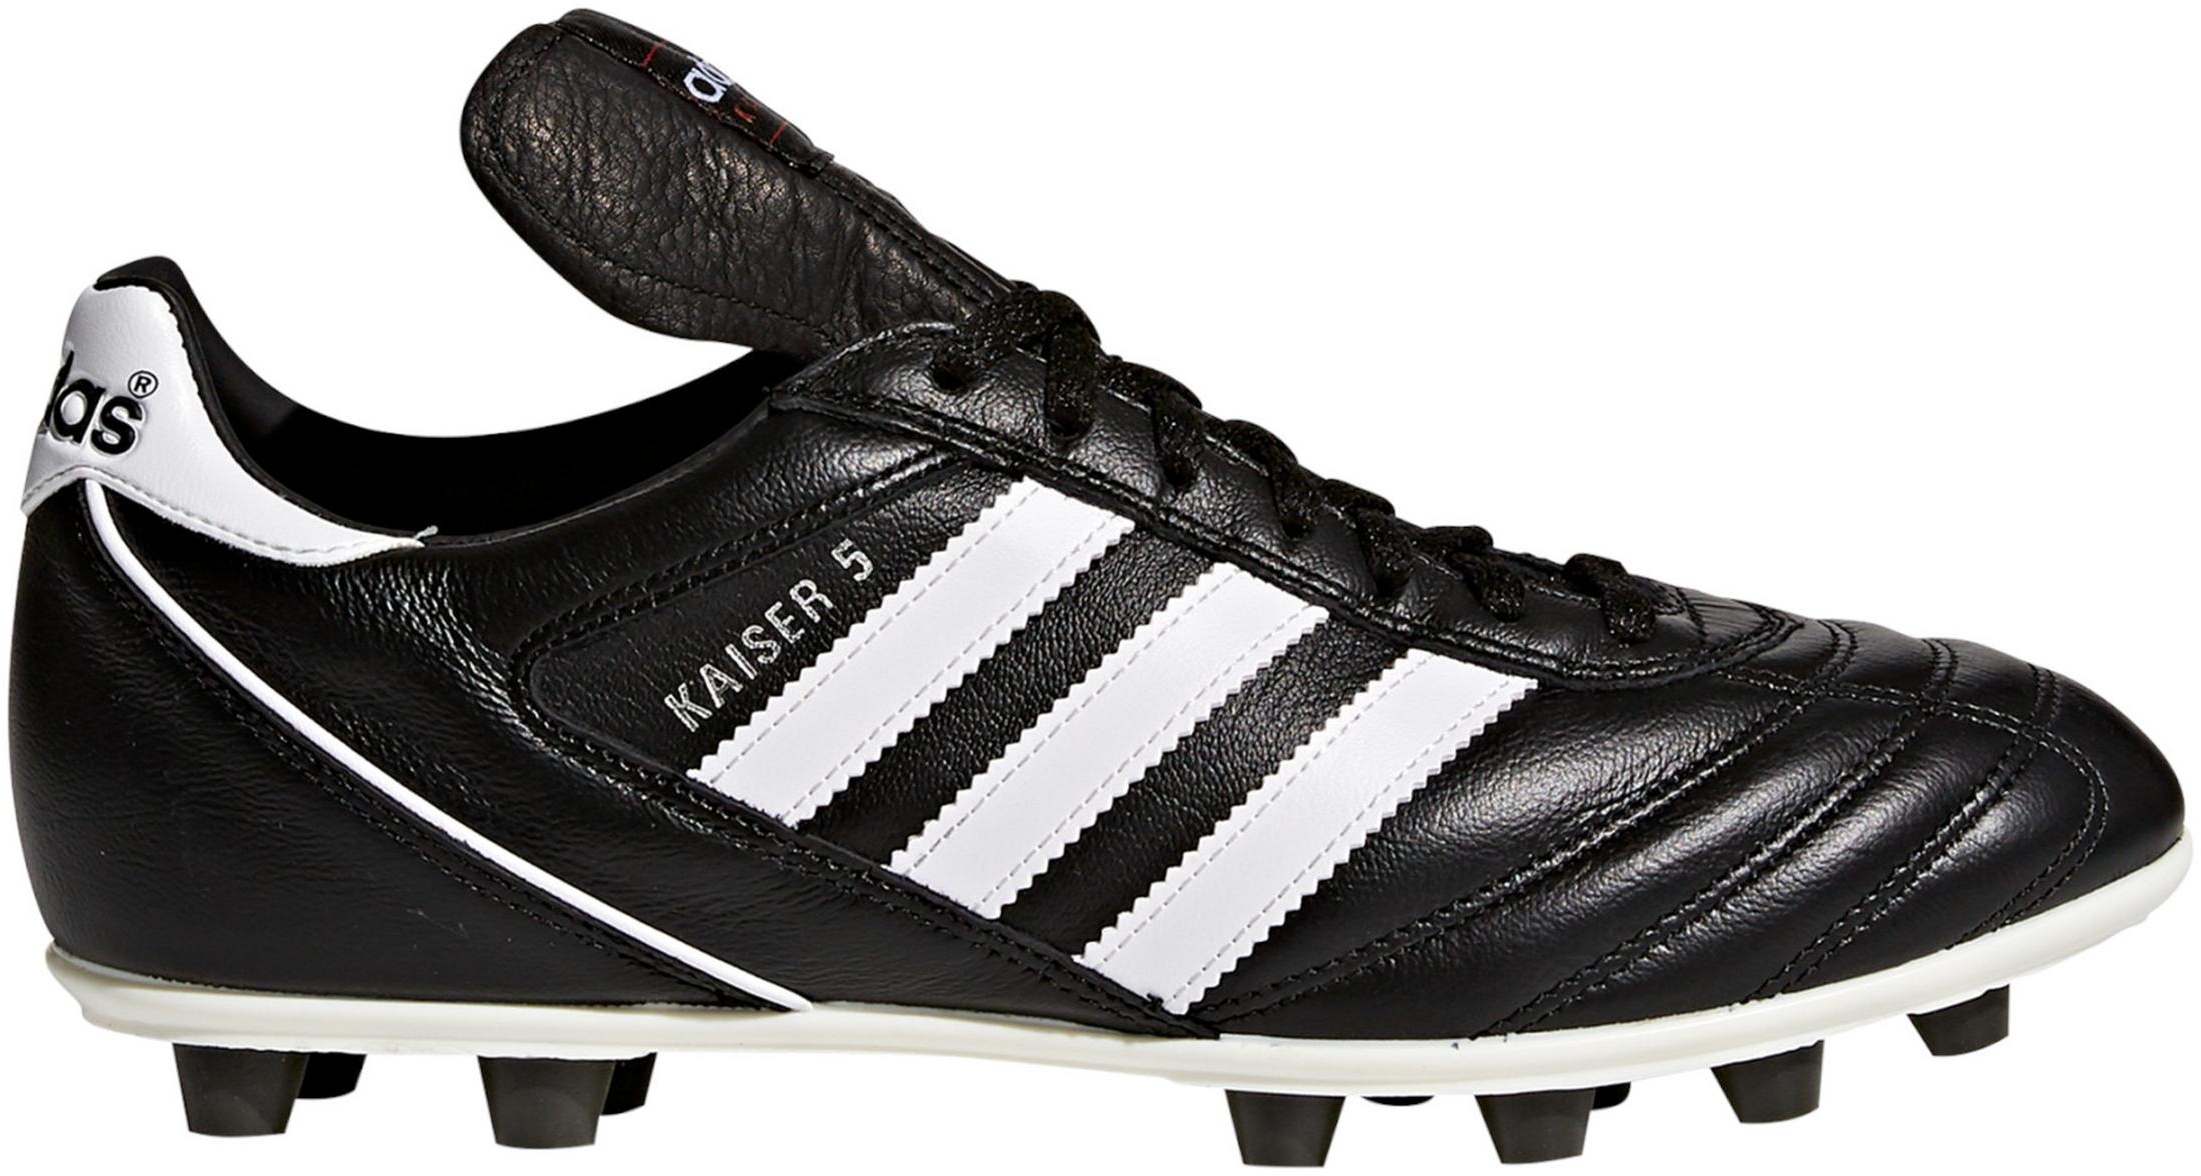 adidas Kaiser 5 Liga FG Fußballschuhe in schwarz-weiß, Größe 9